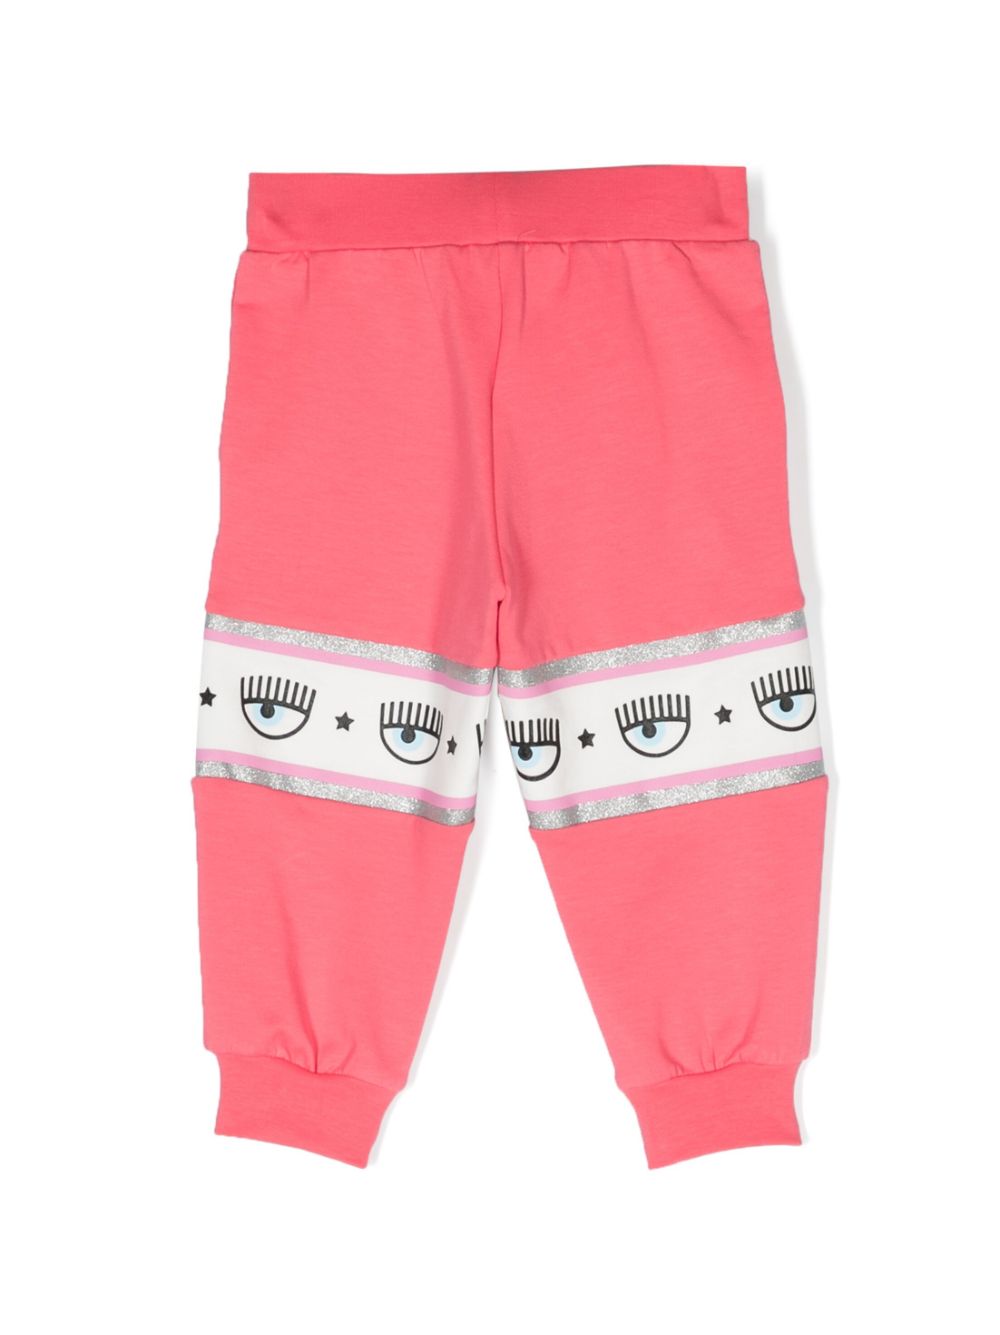 Pantalon rose avec logo imprimé